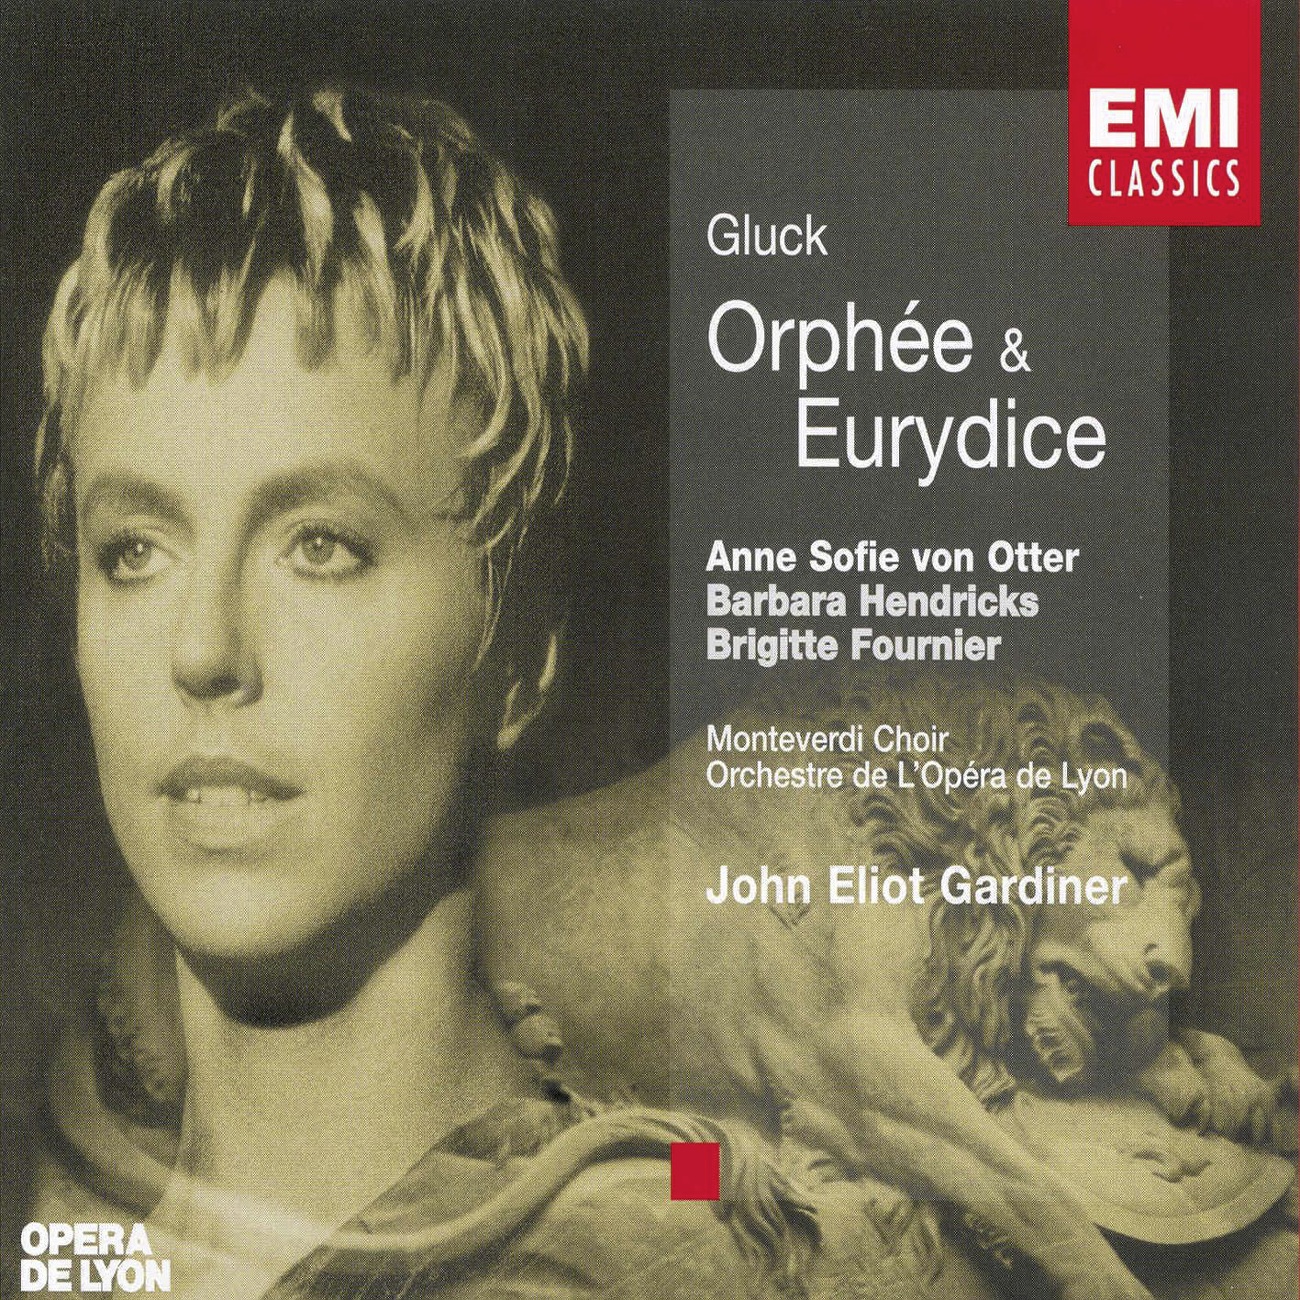 Orphe e et Eurydice, ACT 1, Sce ne 2 Orphe e: Re cit: Eurydice! Eurydice! Ombre che re